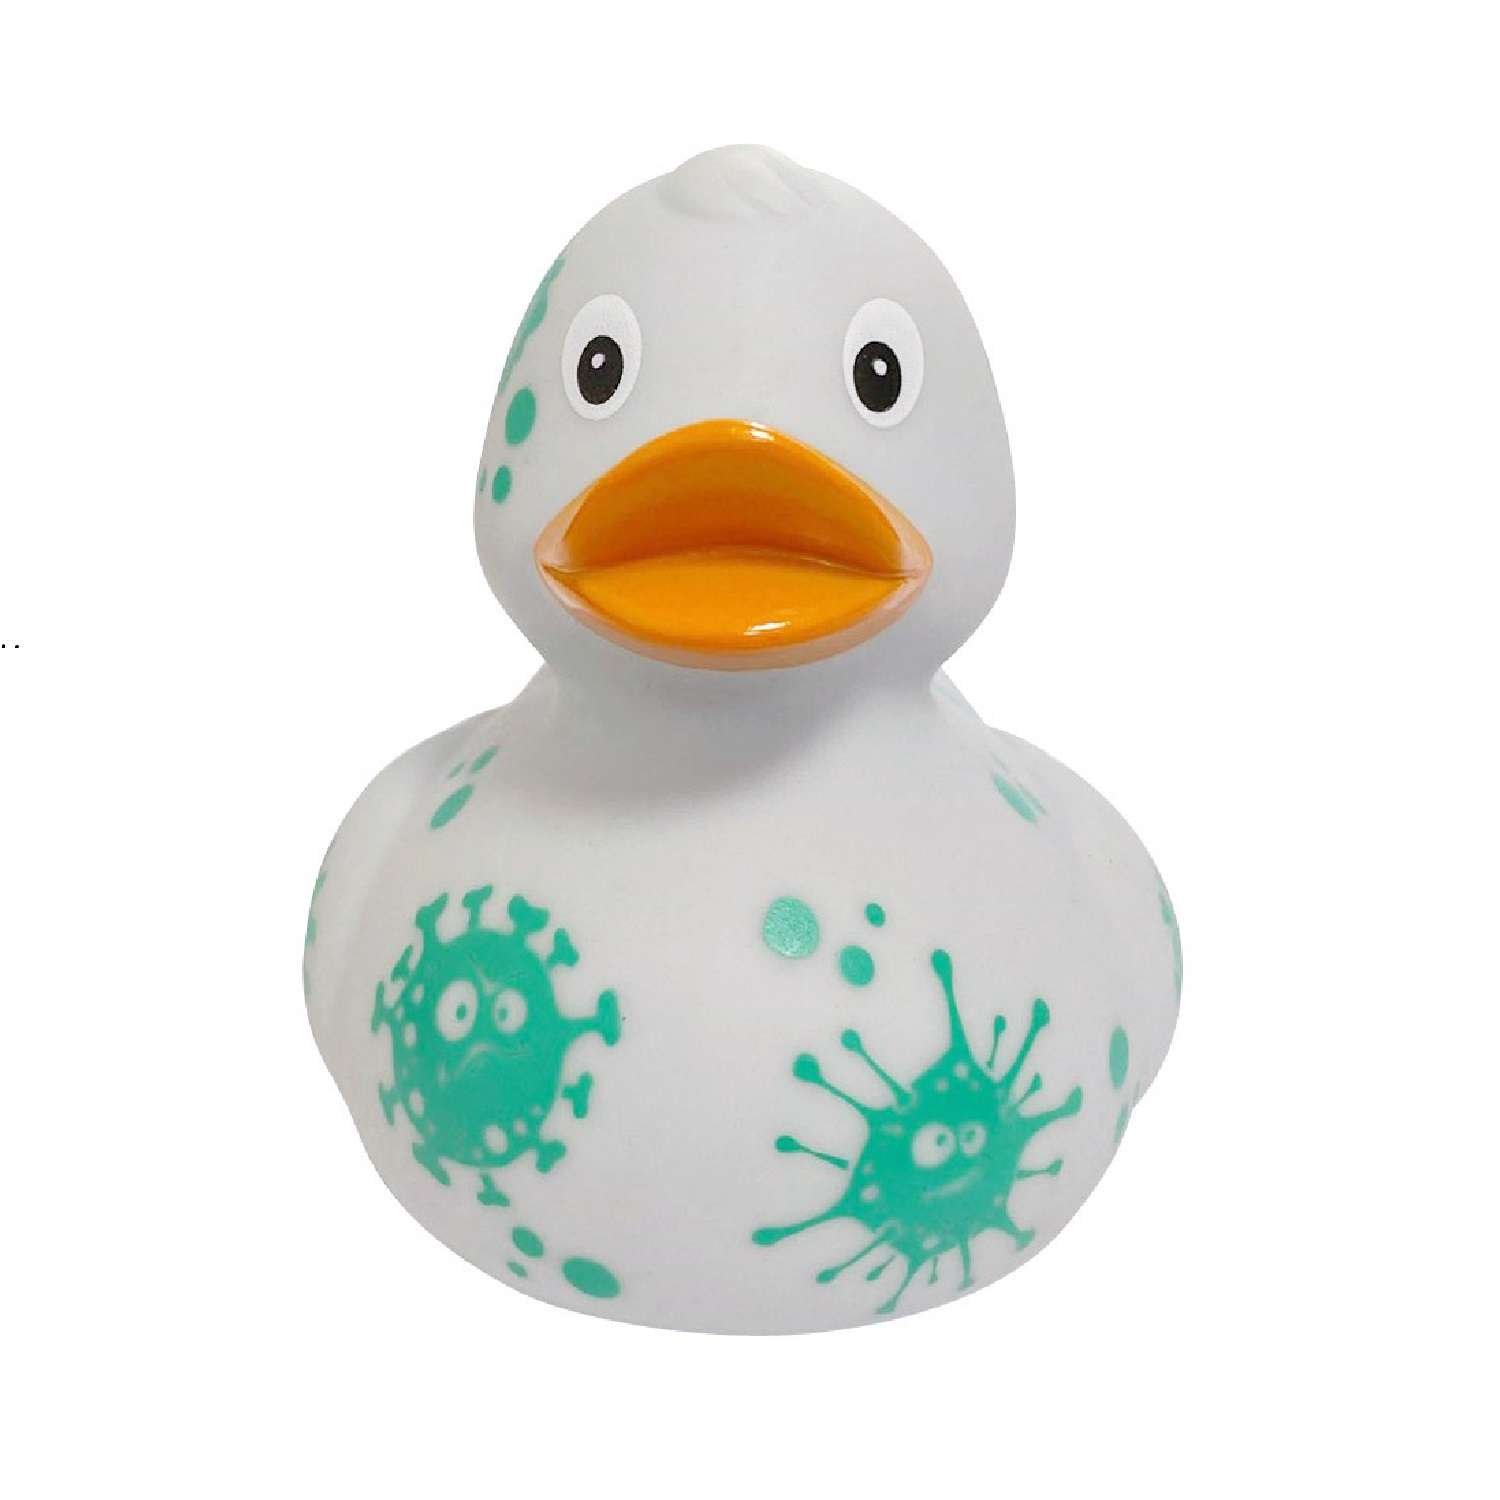 Игрушка Funny ducks для ванной Вирус уточка 1308 - фото 4